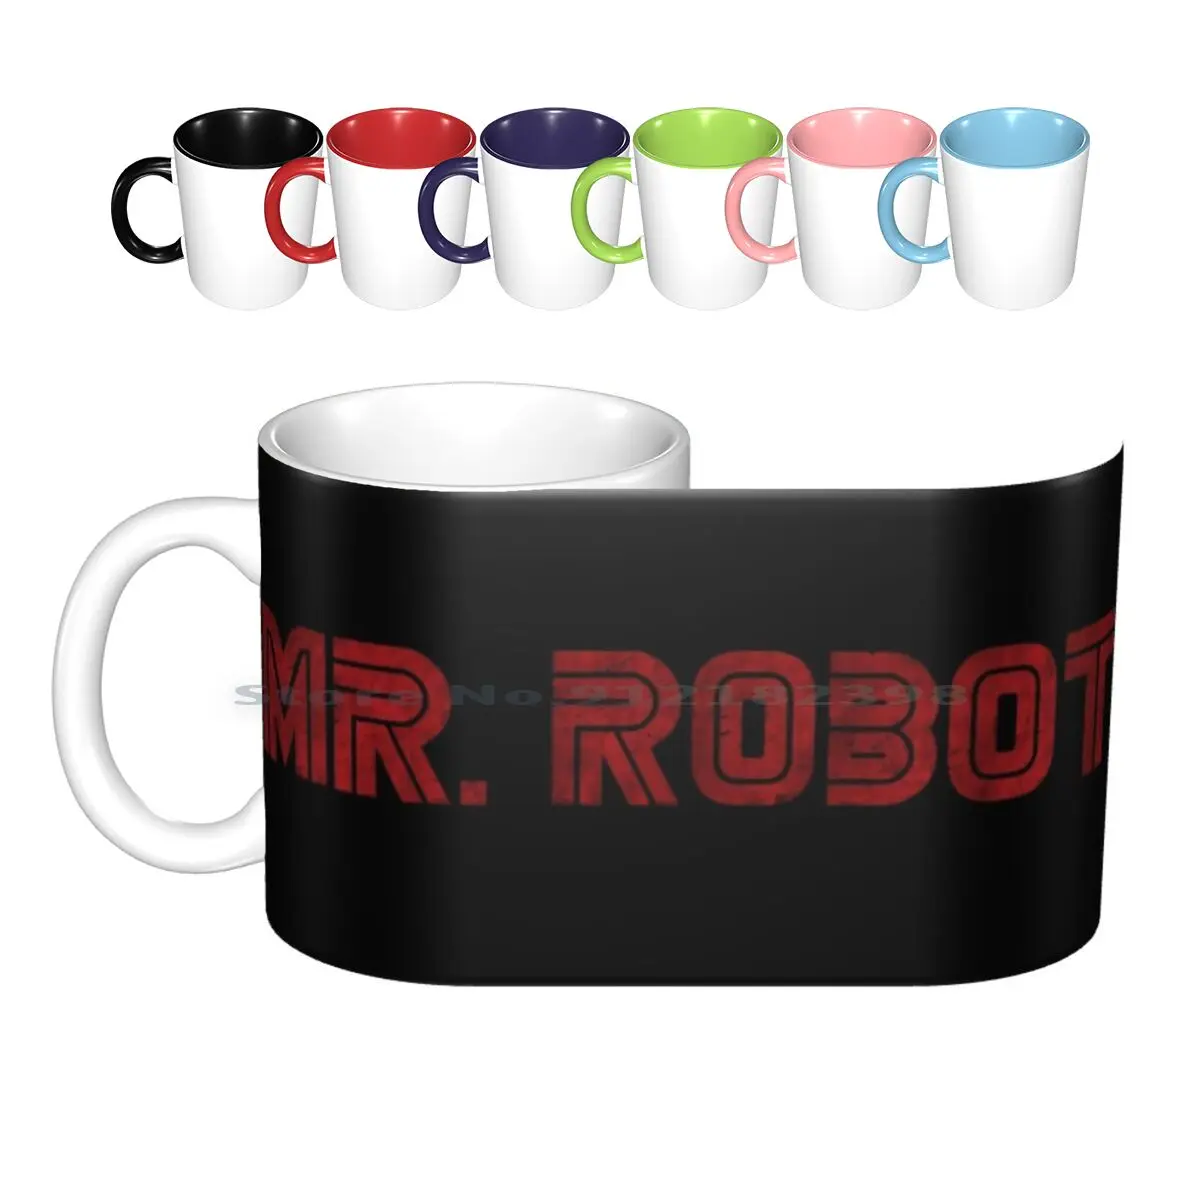 

Mr. Robot (гранж)-кружки, керамические кружки, кофейные чашки, кружка для молока и чая, Mr Robot Hacker fsocial Grunge, выцвел городской город, Эллиот